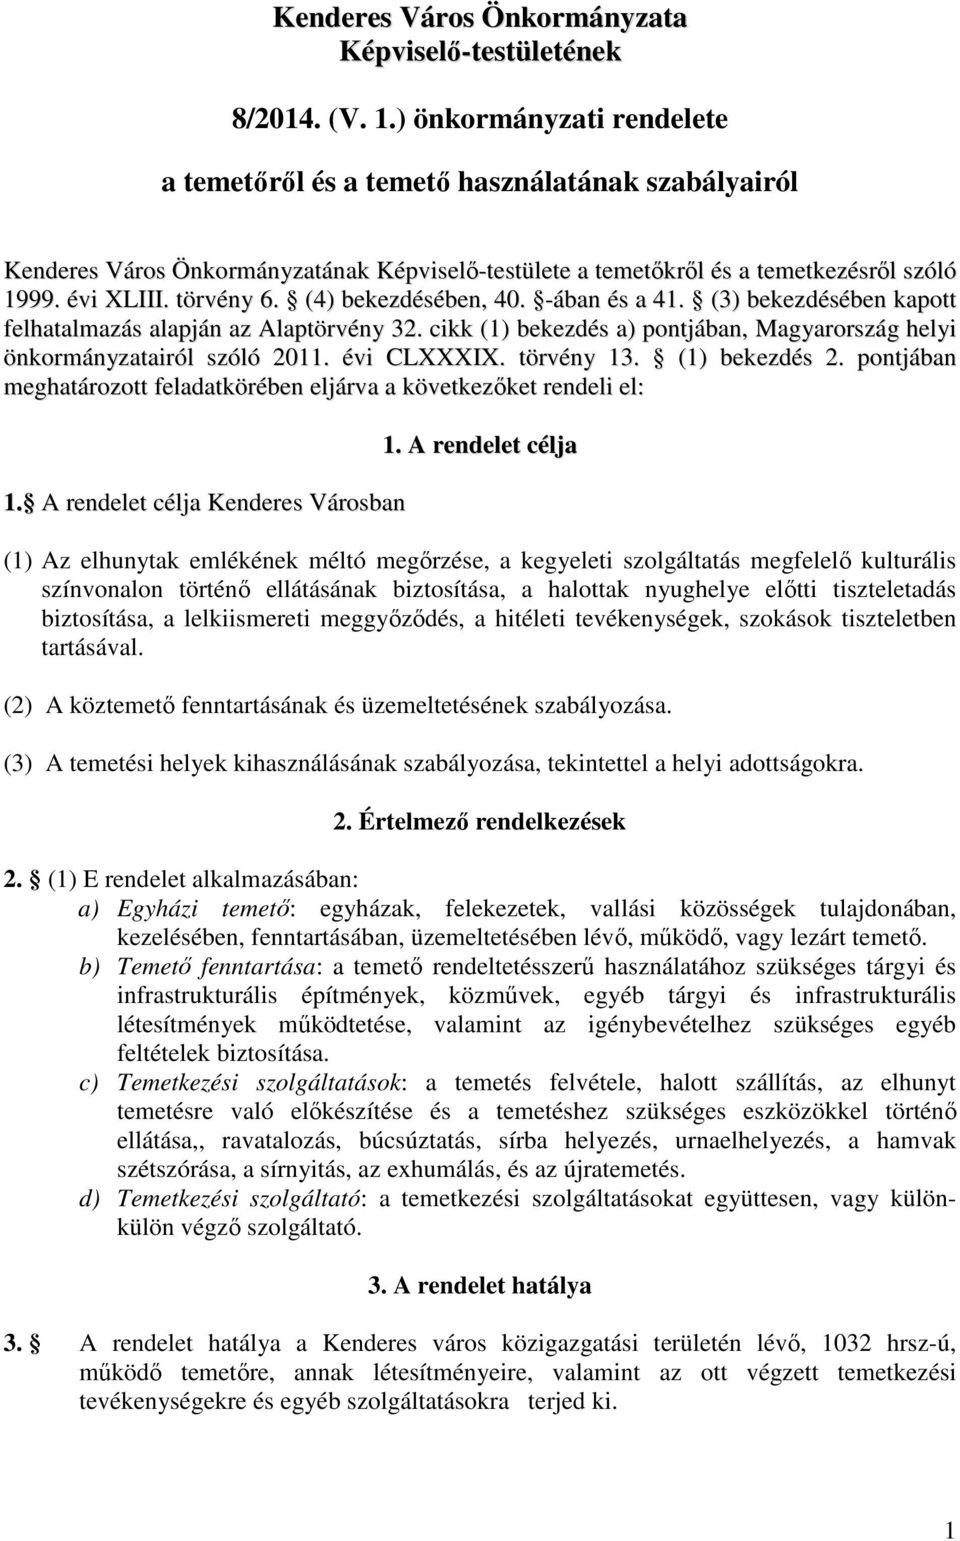 (4) bekezdésében, 40. -ában és a 41. (3) bekezdésében kapott felhatalmazás alapján az Alaptörvény 32. cikk (1) bekezdés a) pontjában, Magyarország helyi önkormányzatairól szóló 2011. évi CLXXXIX.